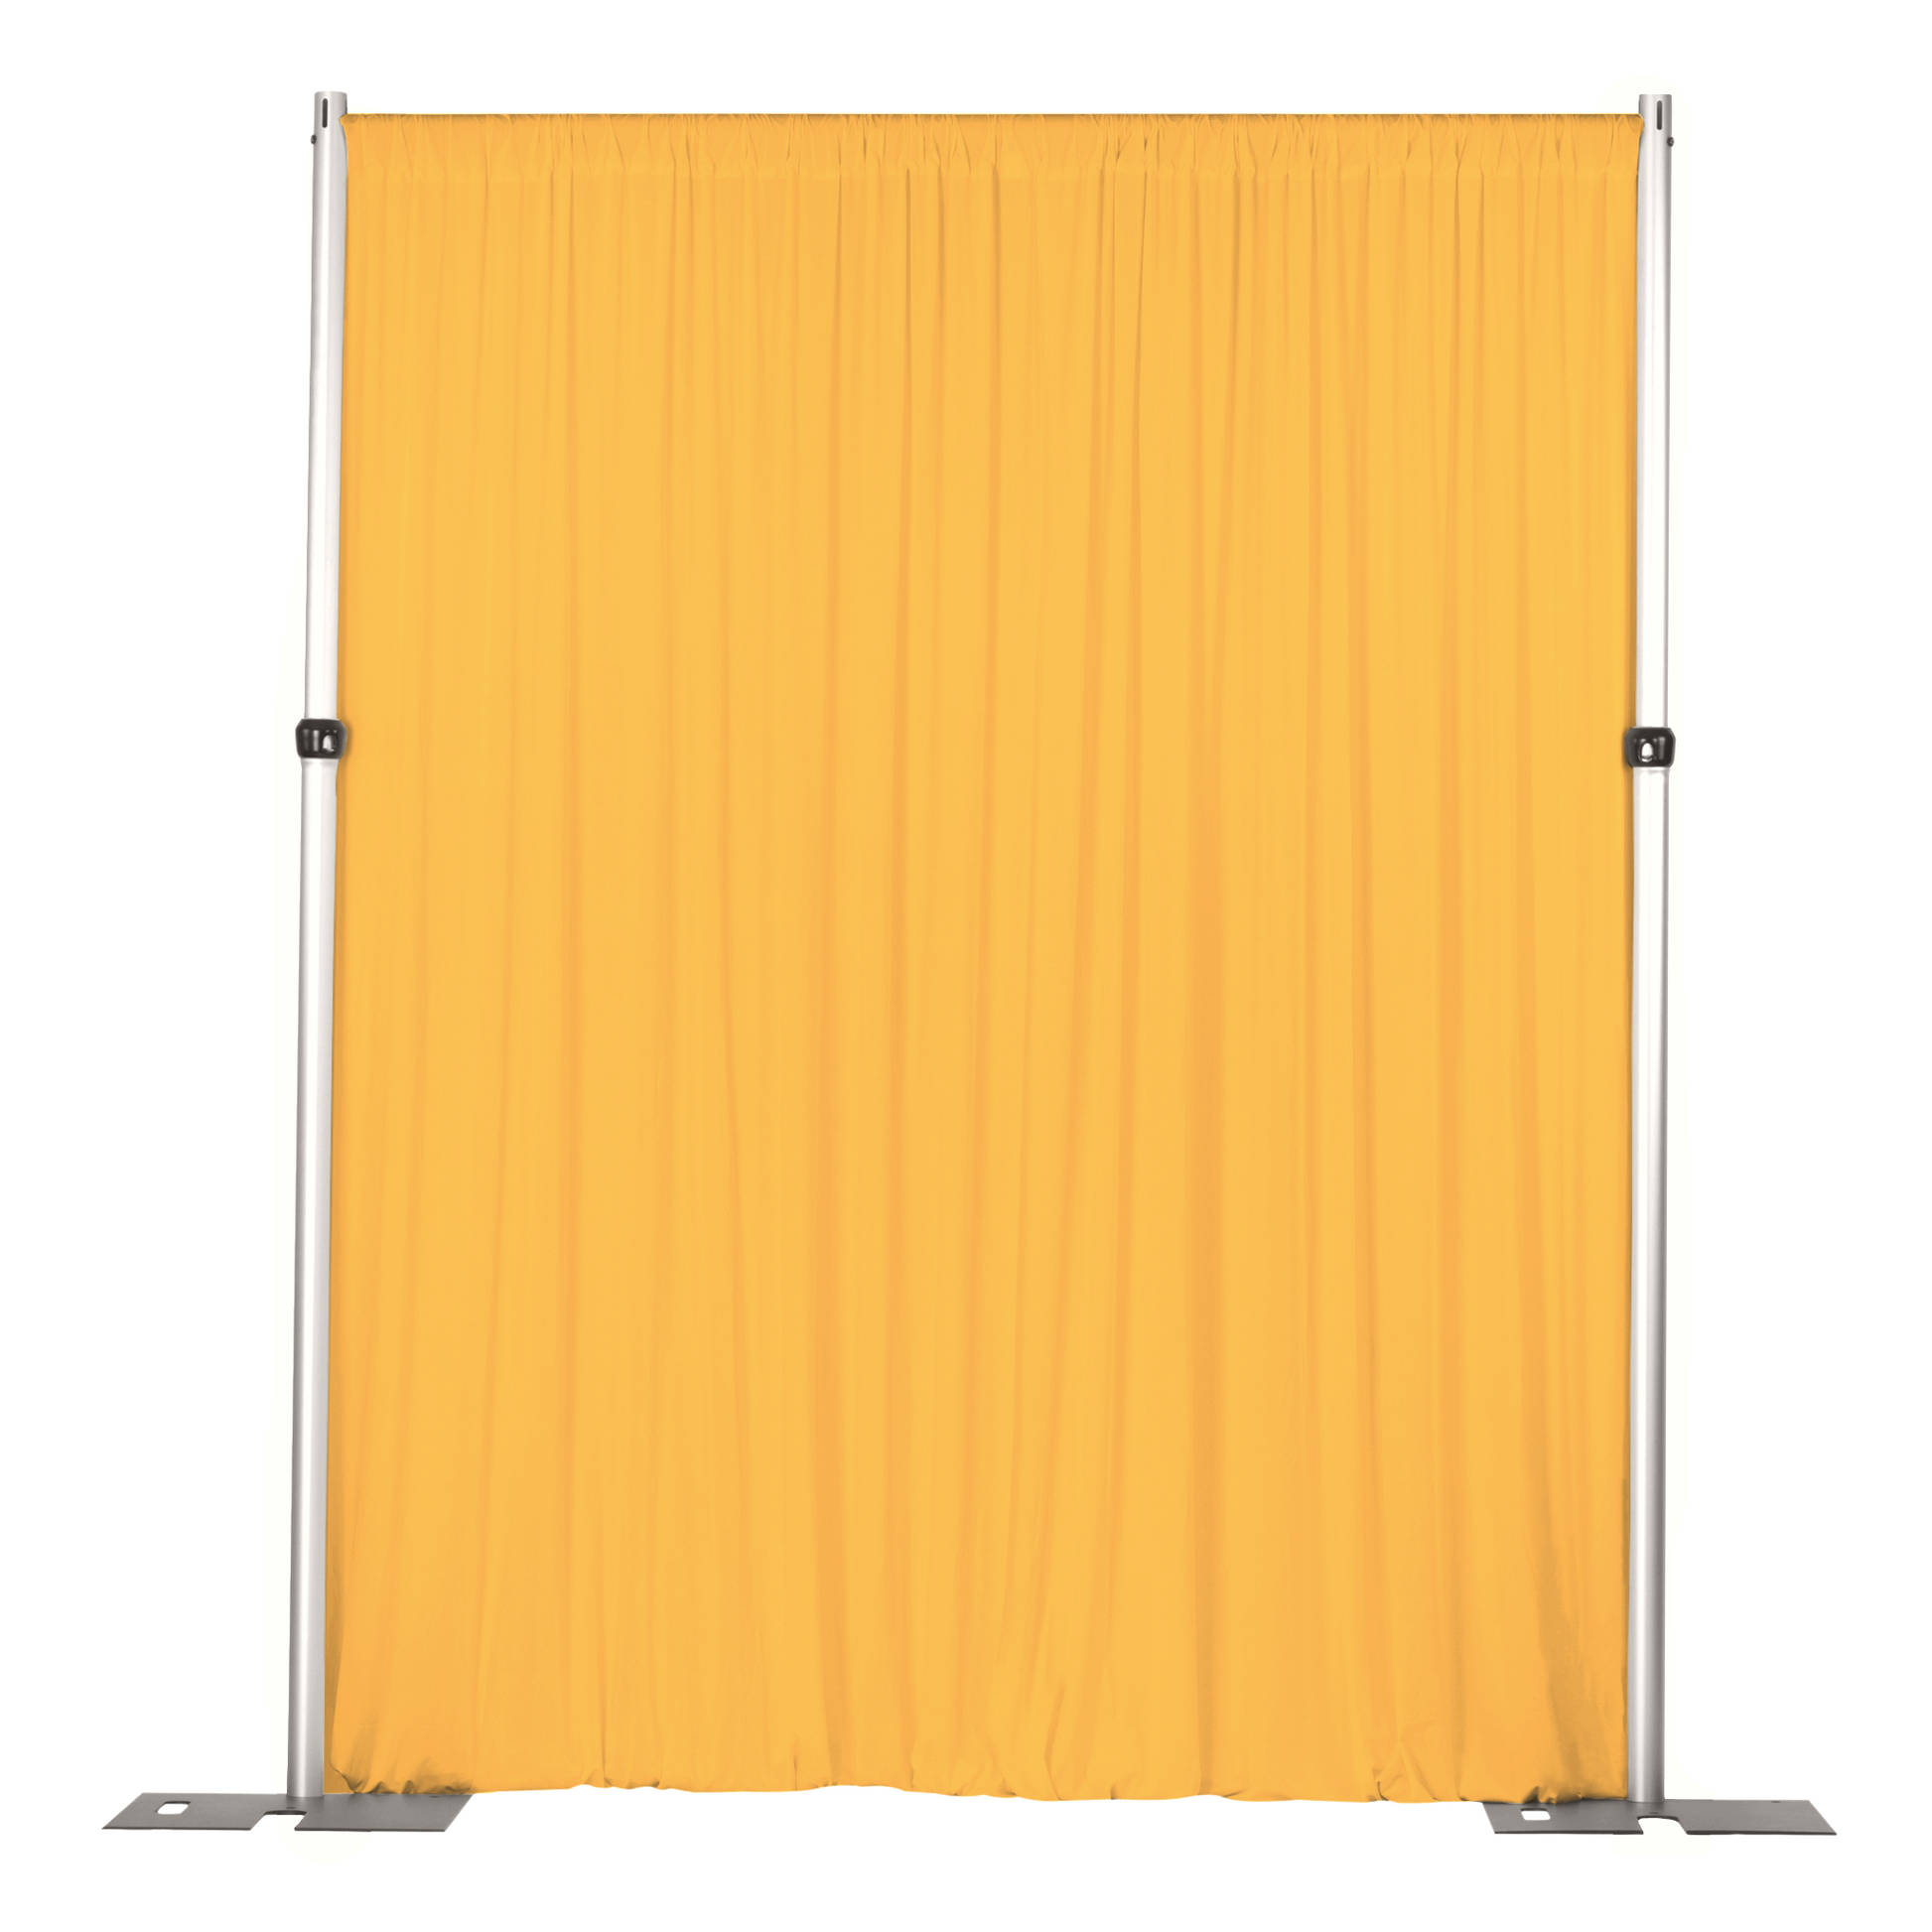 Spandex 4-way Stretch Drape Curtain 10ft H x 60" W - Canary Yellow